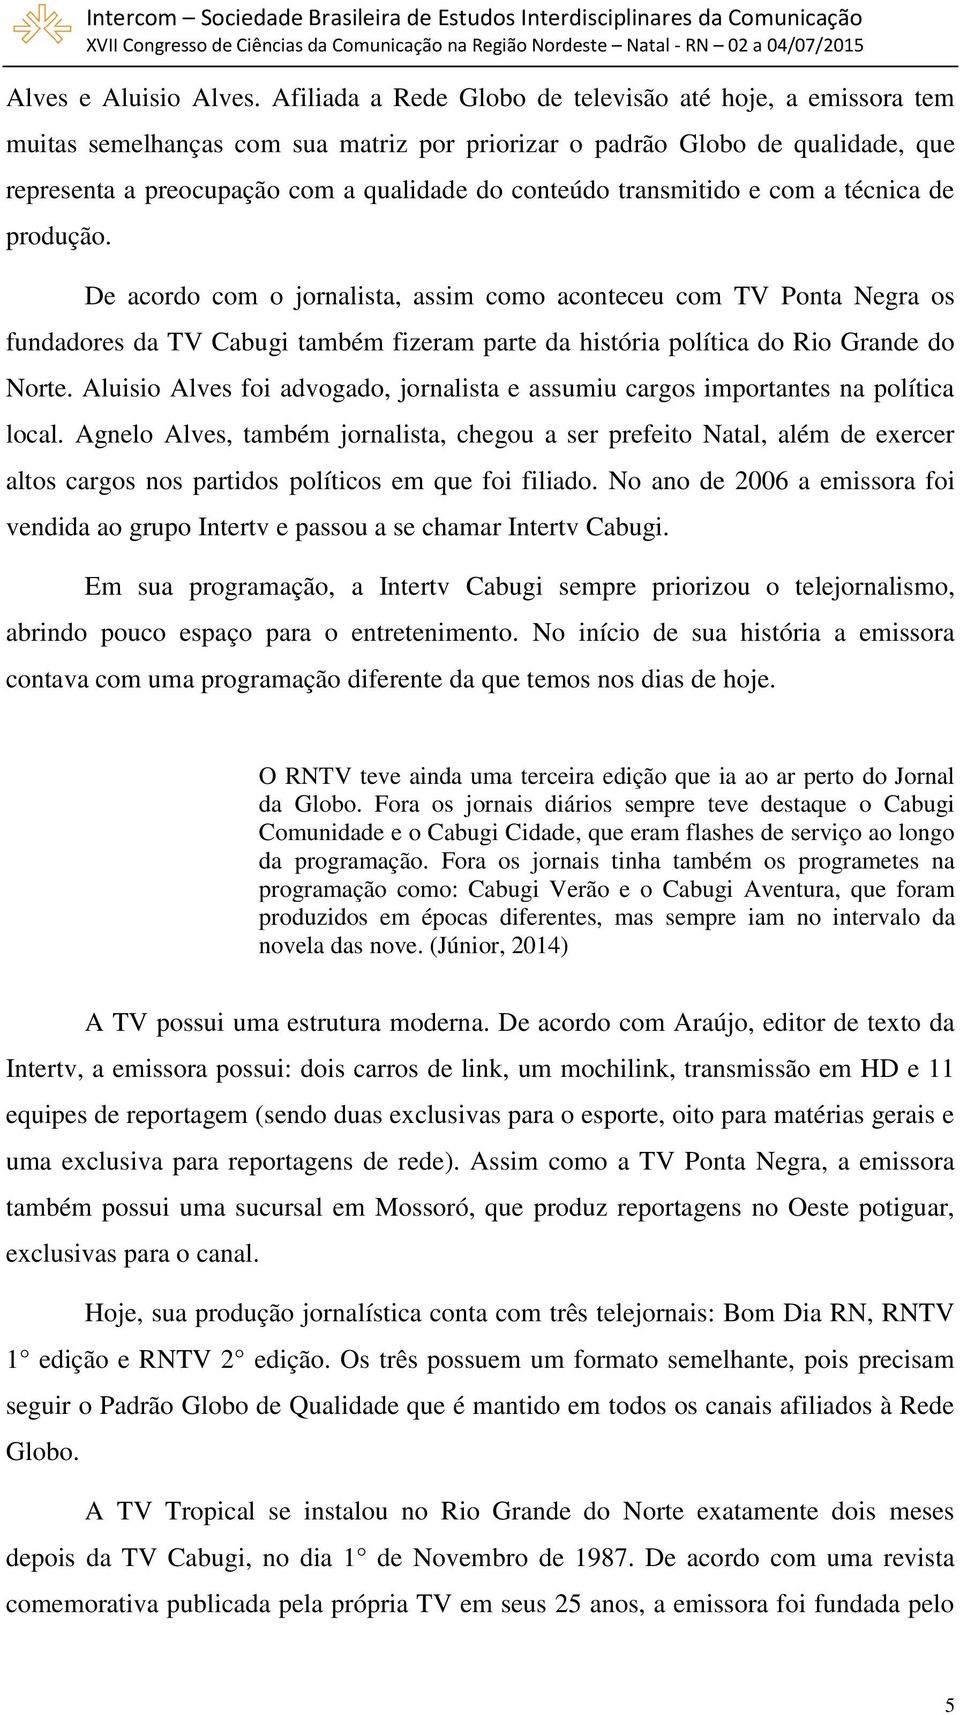 Uma trajetória da TV no Rio Grande do Norte 1. Ananda FIGUEIREDO 2  Universidade Federal do Rio Grande do Norte - PDF Free Download